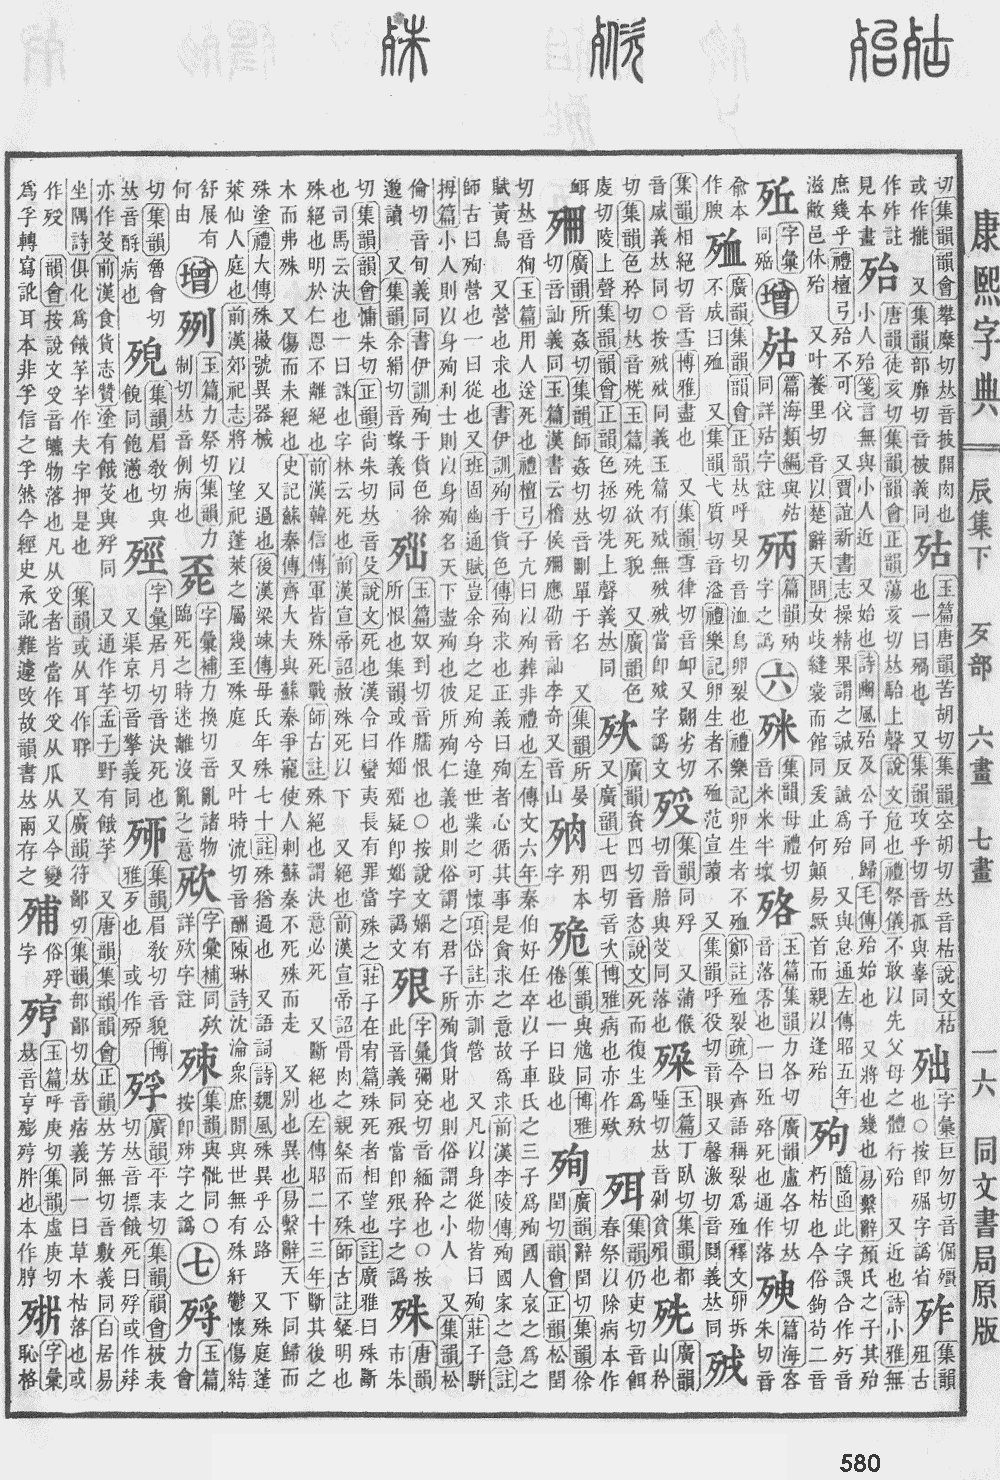 康熙字典第580页图片